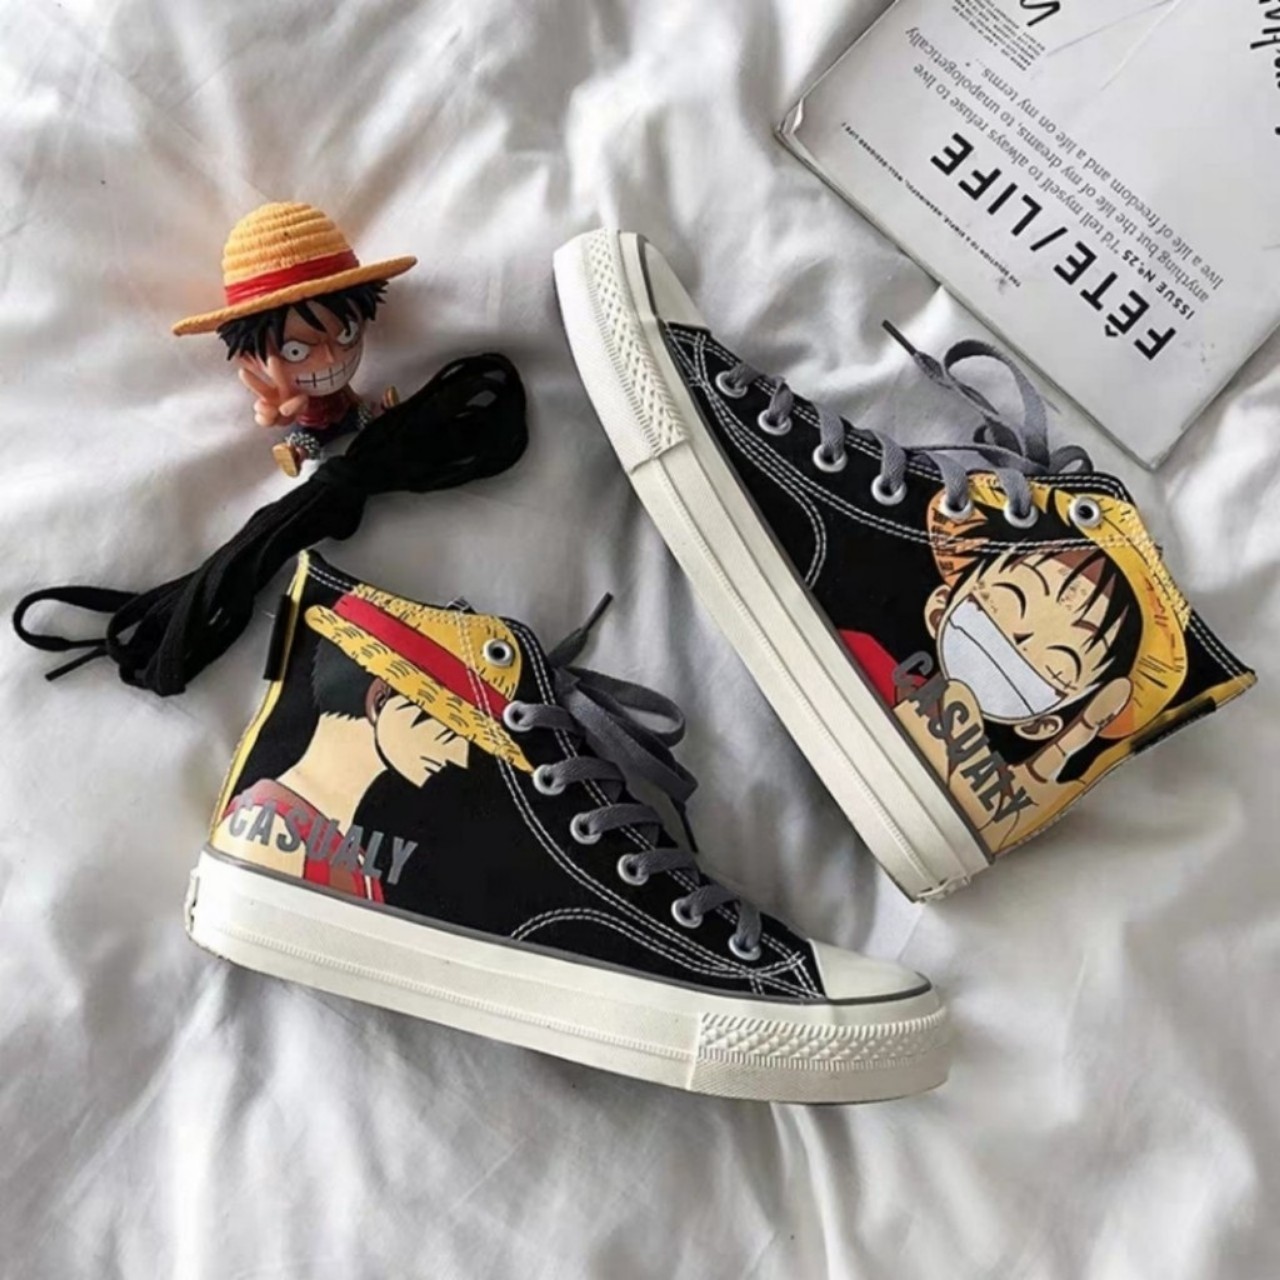 Đối với những fan của One Piece, việc sở hữu một đôi giày Luffy là điều không thể thiếu. Với bức hình vẽ giày Luffy tuyệt đẹp này, bạn sẽ được chiêm ngưỡng cách mà chiếc giày này được tạo ra từ ý tưởng đến sản phẩm hoàn chỉnh, mang đầy đủ bản sắc và cá tính của nhân vật Luffy.